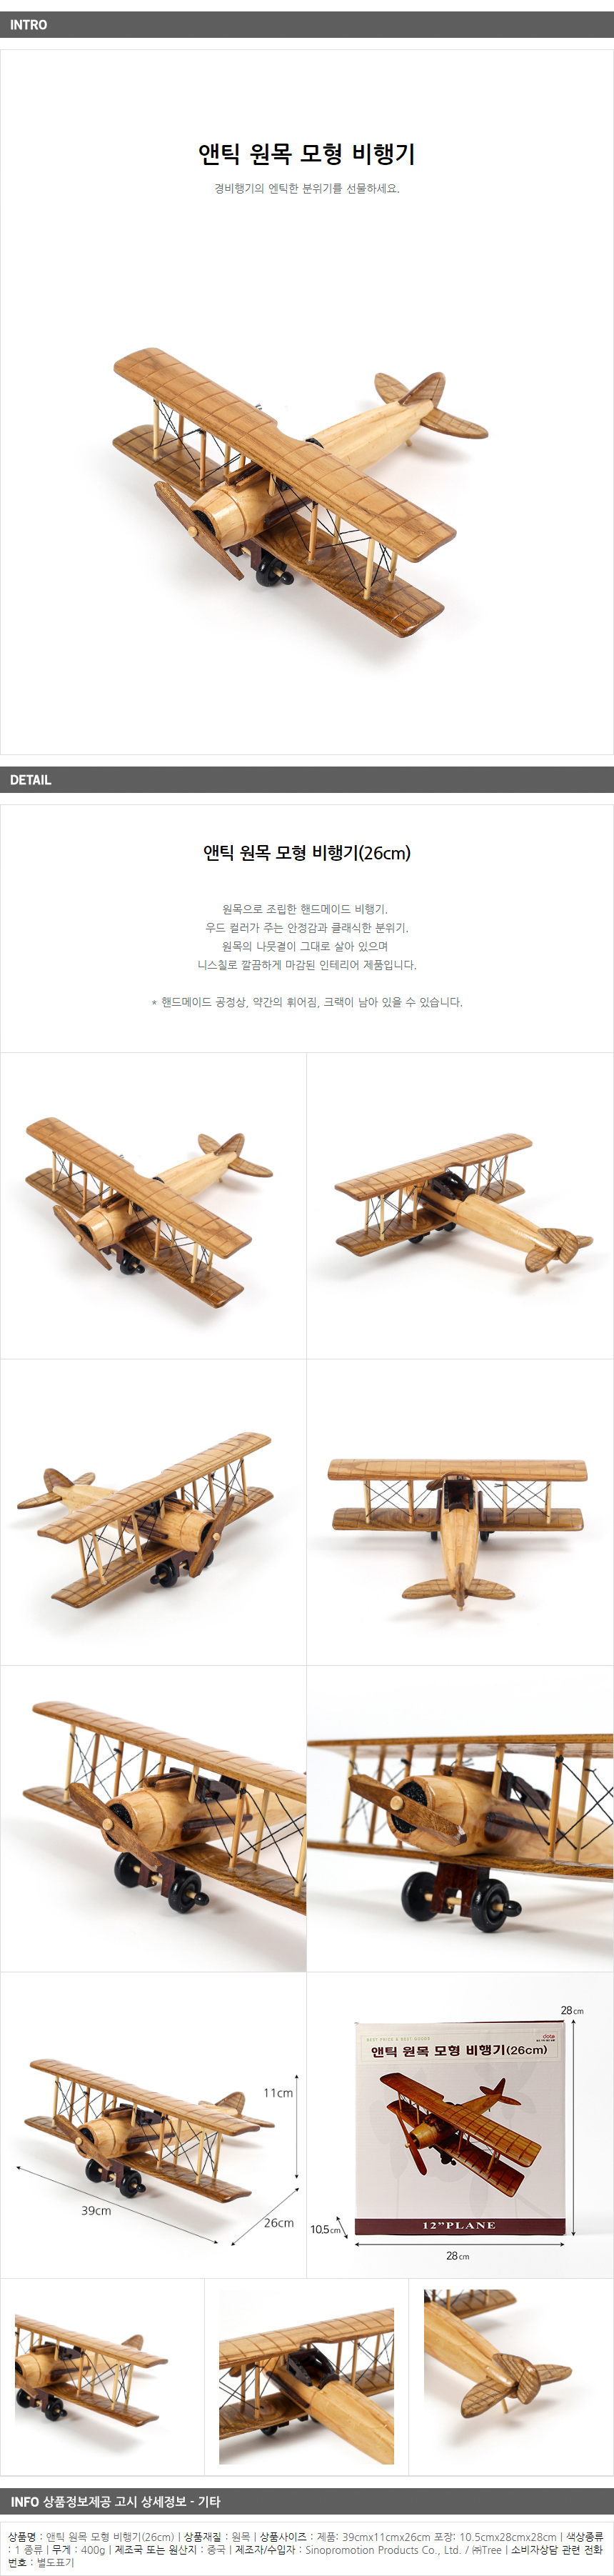 앤틱 원목 모형비행기(26cm)/핸드메이드 비행기 완구